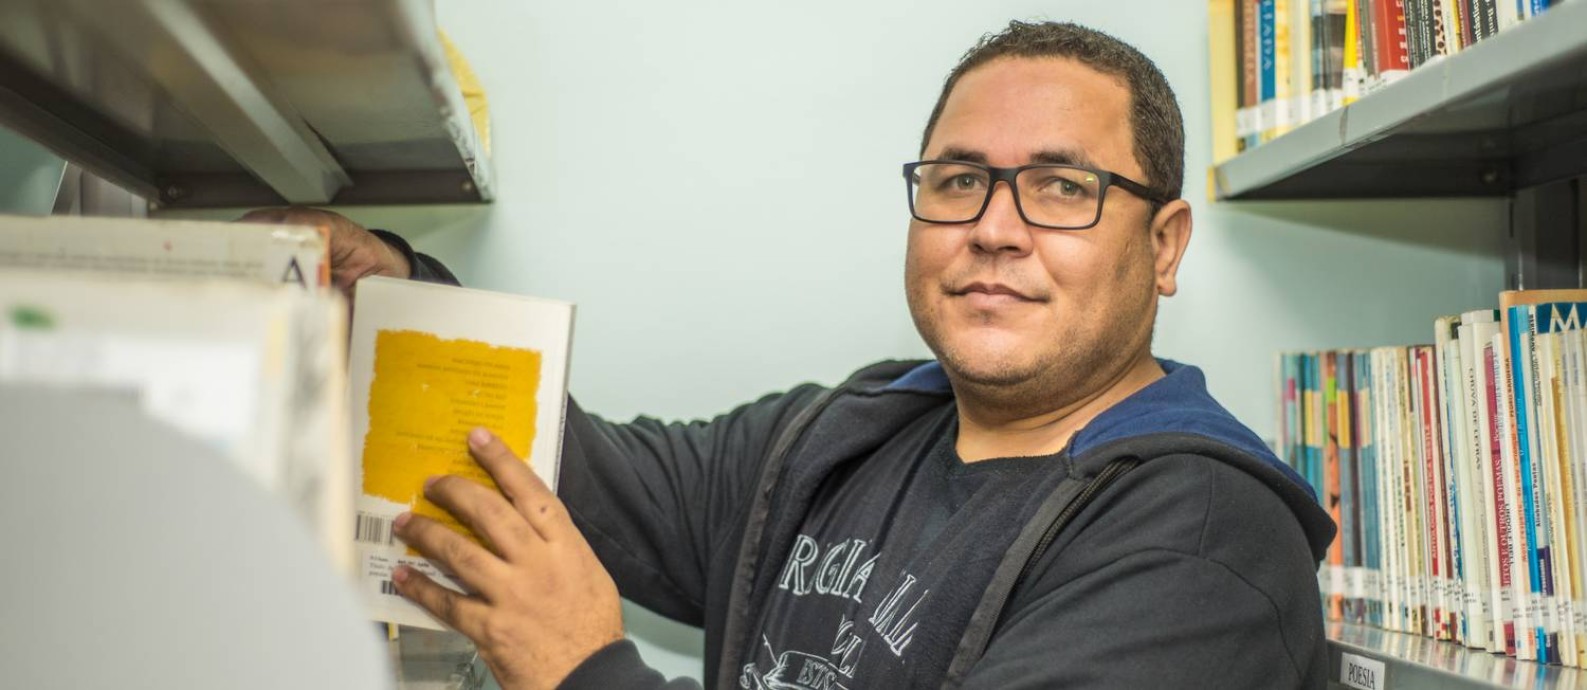 Dorival Santos aprendeu a ler com livros que a mãe tirou do lixo e lembrou que colegas zombavam dele por usar roupas recicladas Foto: Eduardo Valente / Agência O Globo